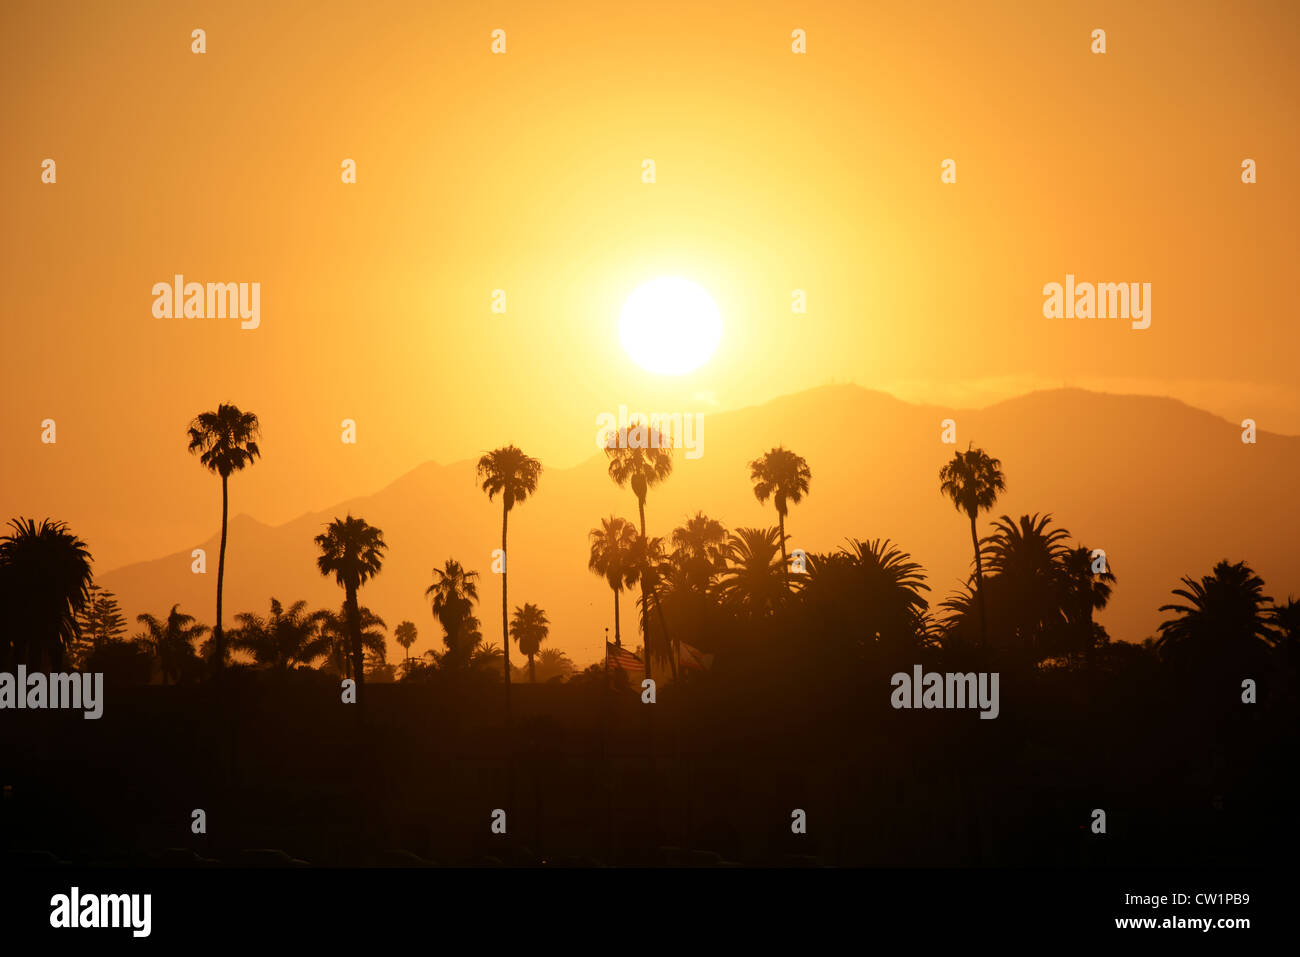 Sunset at Santa Barbara, California. Stock Photo